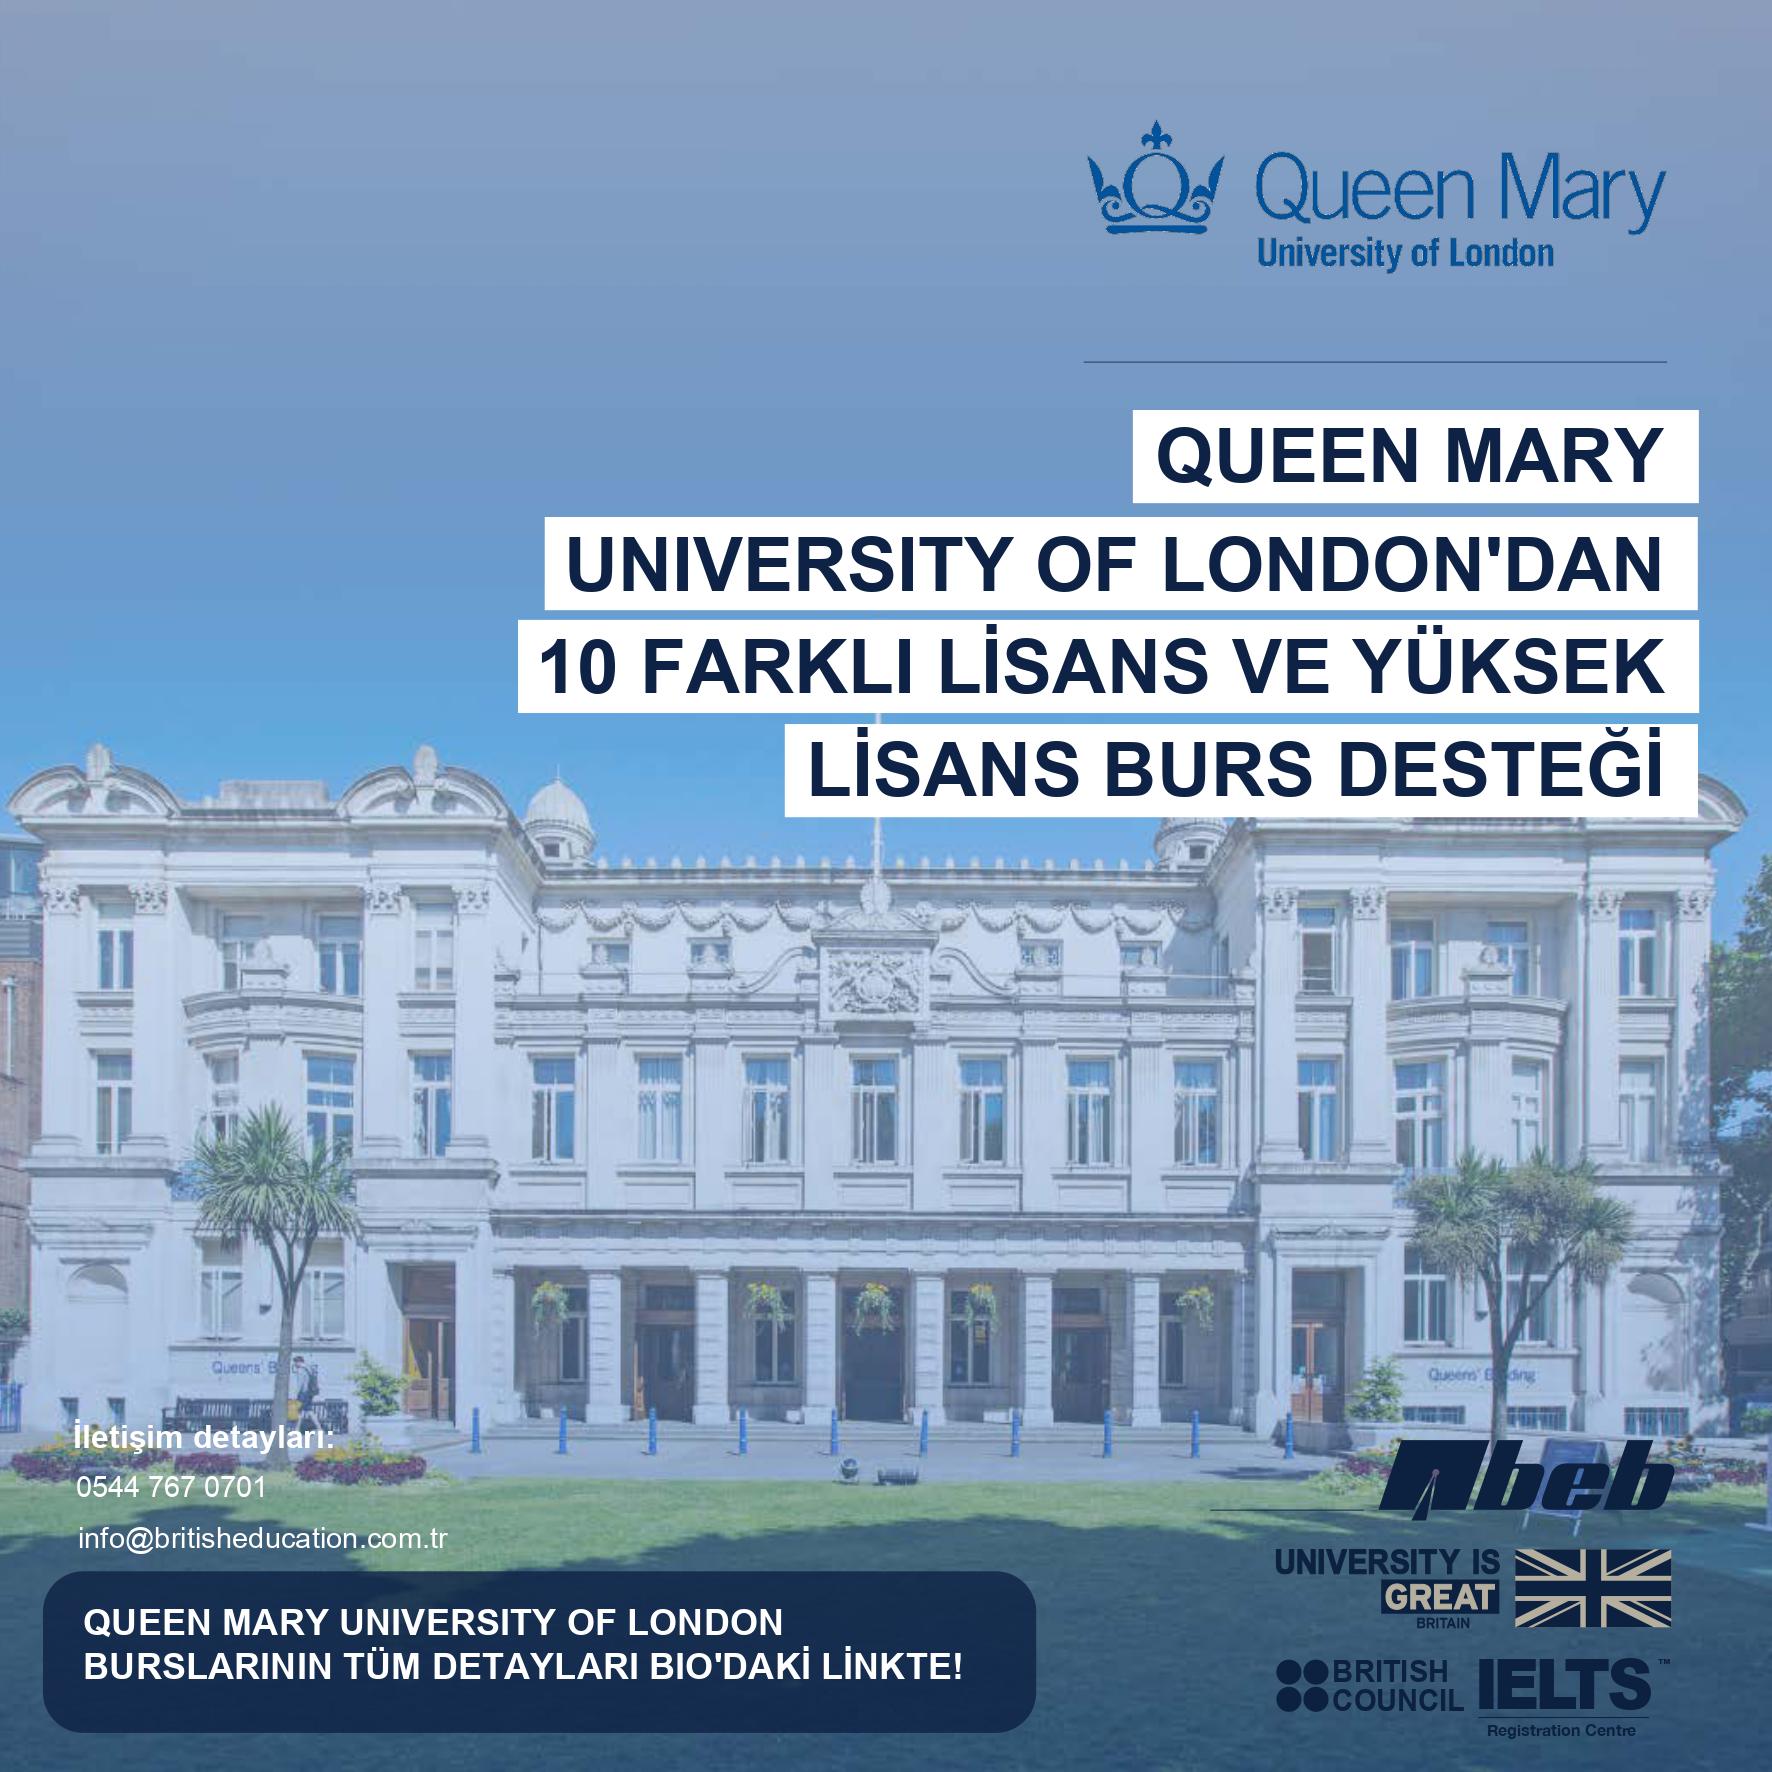 Dünyanın en iyi 15 İngiltere Üniversitesinden biri olan Queen Mary University of London'un kampüsü ve Üniversitenin 10 farklı bursuyla ilgili detayların yer aldığı içeriğin tanıtım görseli